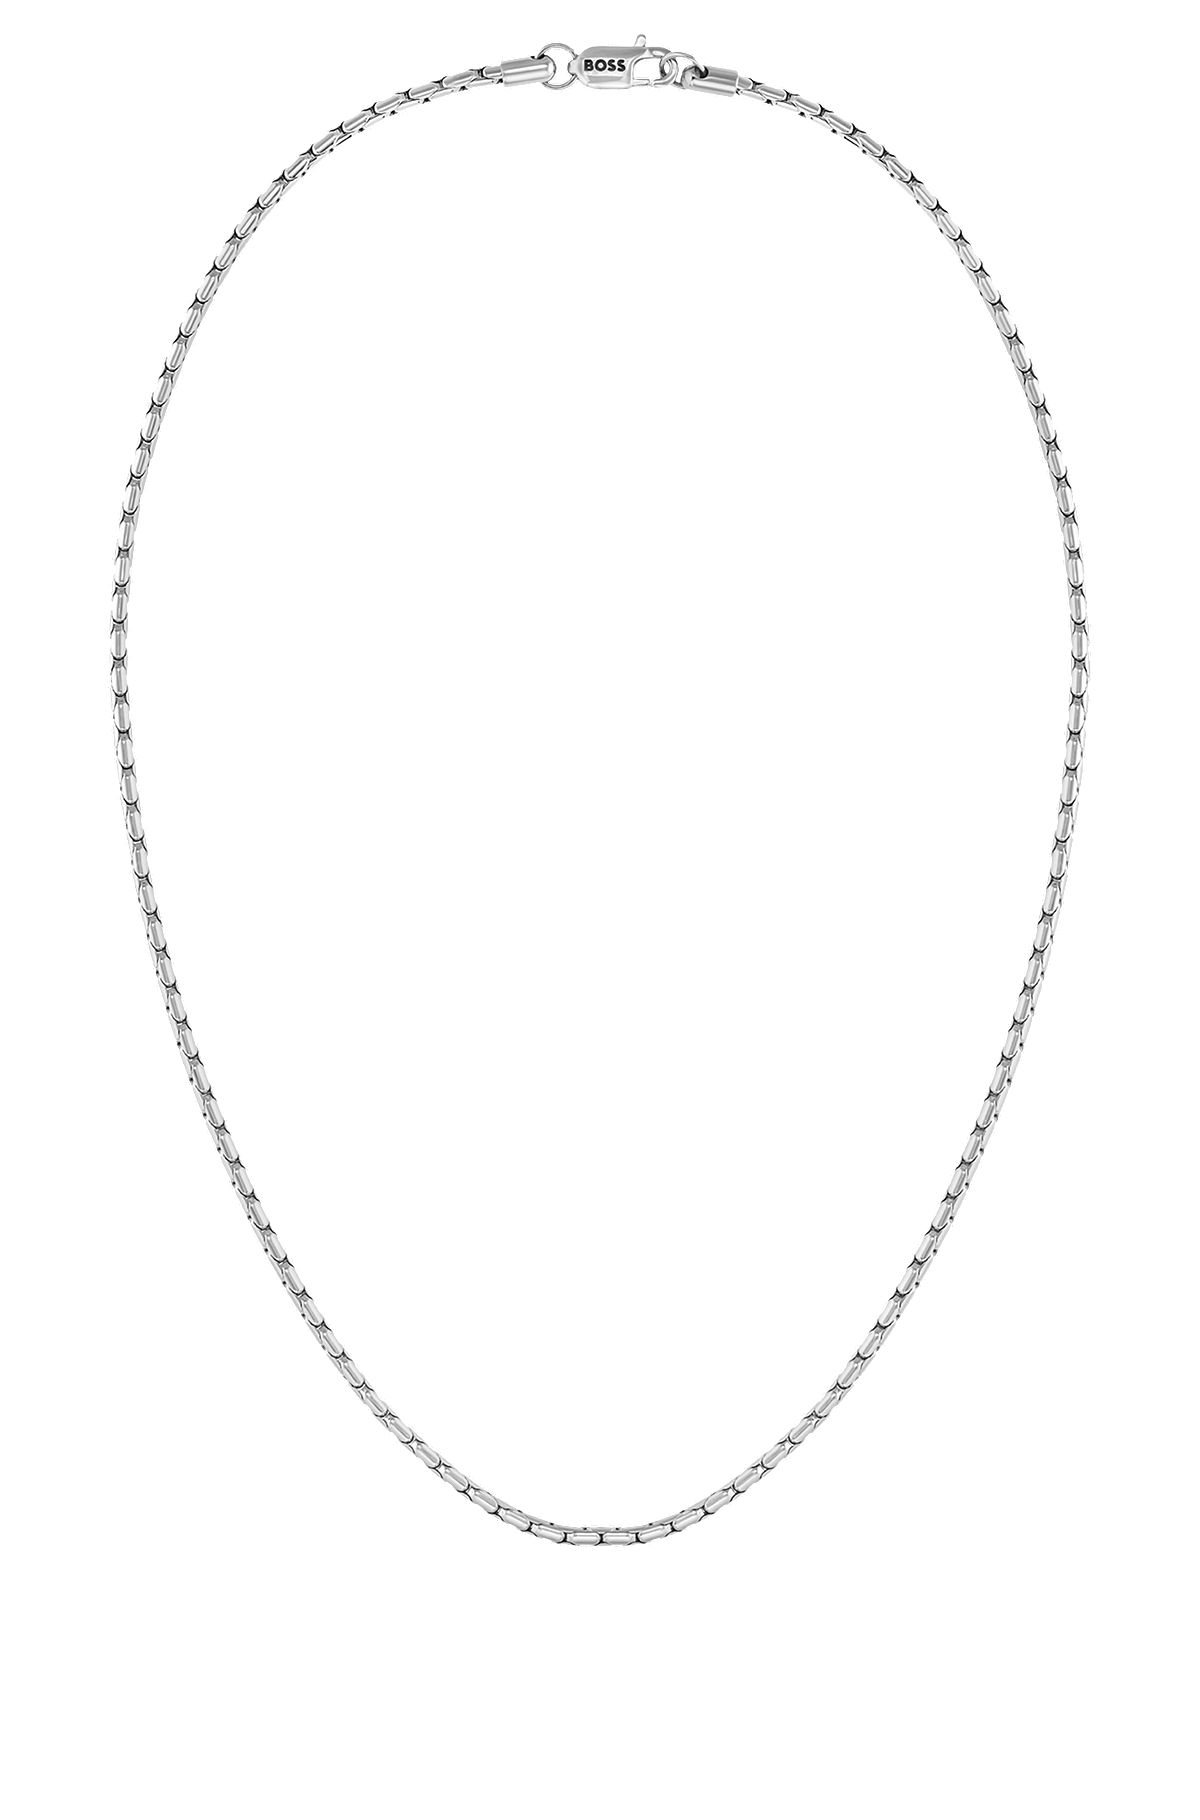 Silberfarbene Halskette mit Logo am Karabinerverschluss, Silberfarben